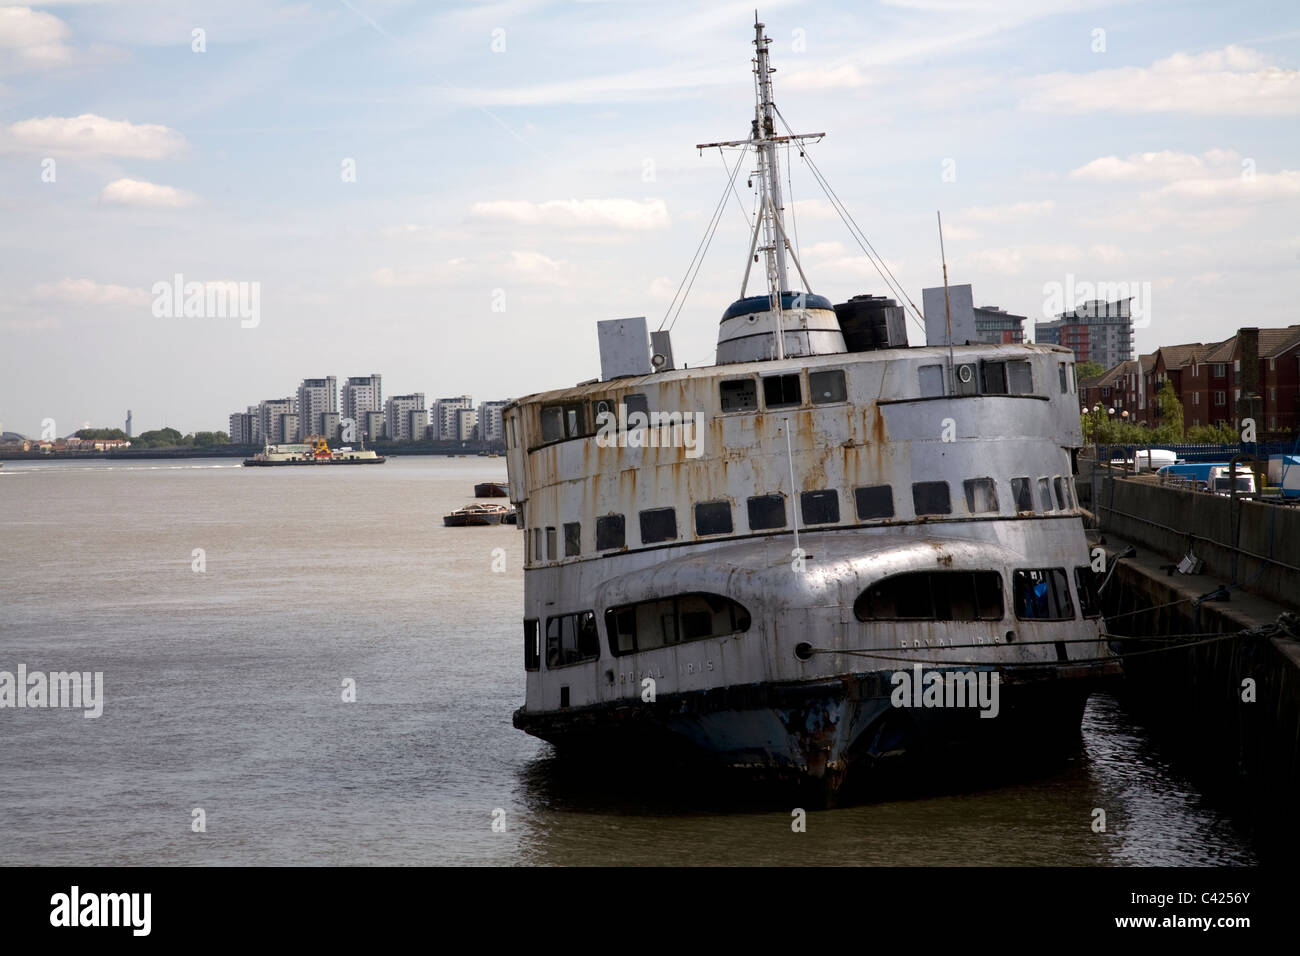 Royal iris vecchio traghetto Mersey River Thames charlton London Inghilterra England Foto Stock